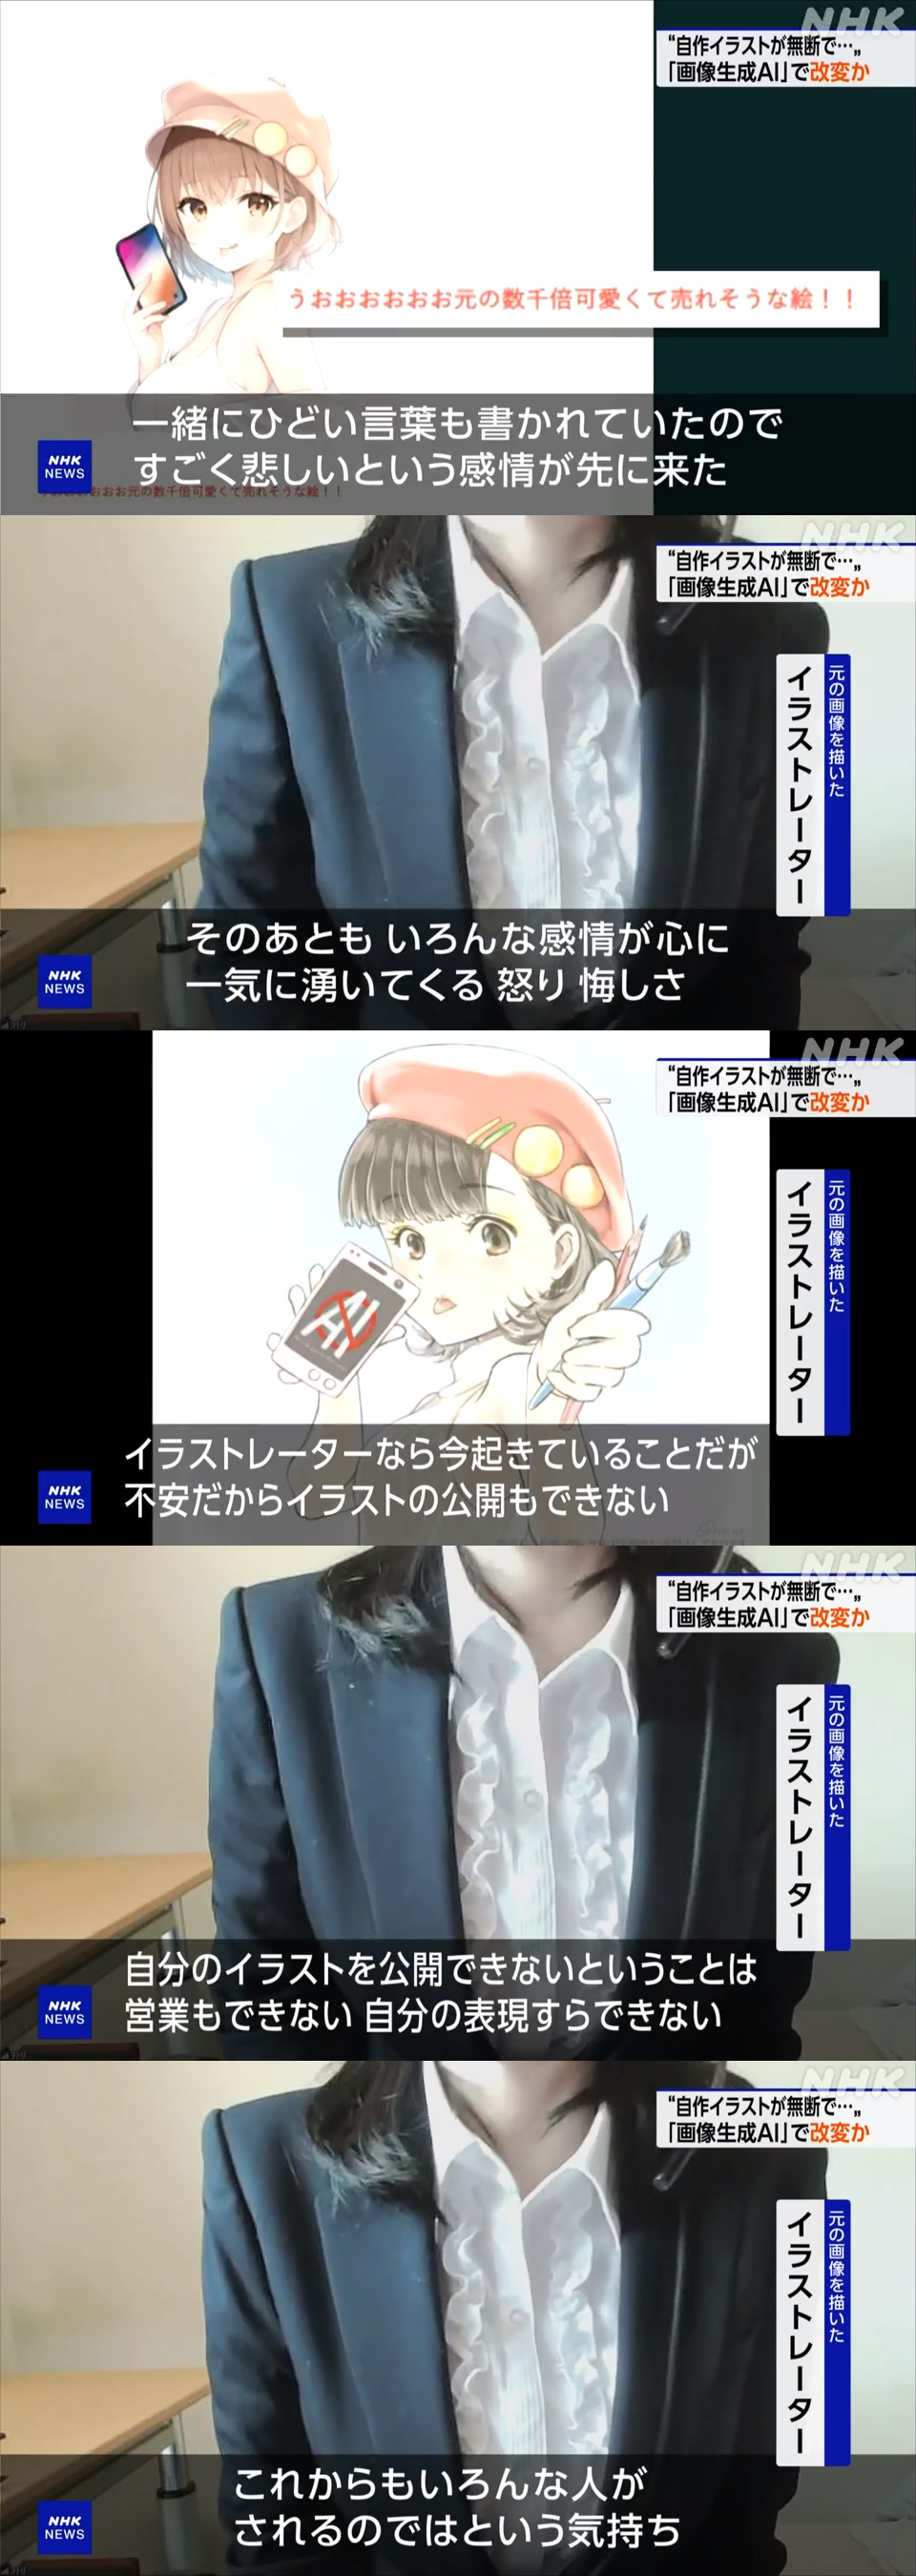 NHK 「女性が描いたこのイラストは、悪意あるAI利用者によってこのように改変されてしまいました…」\n_1